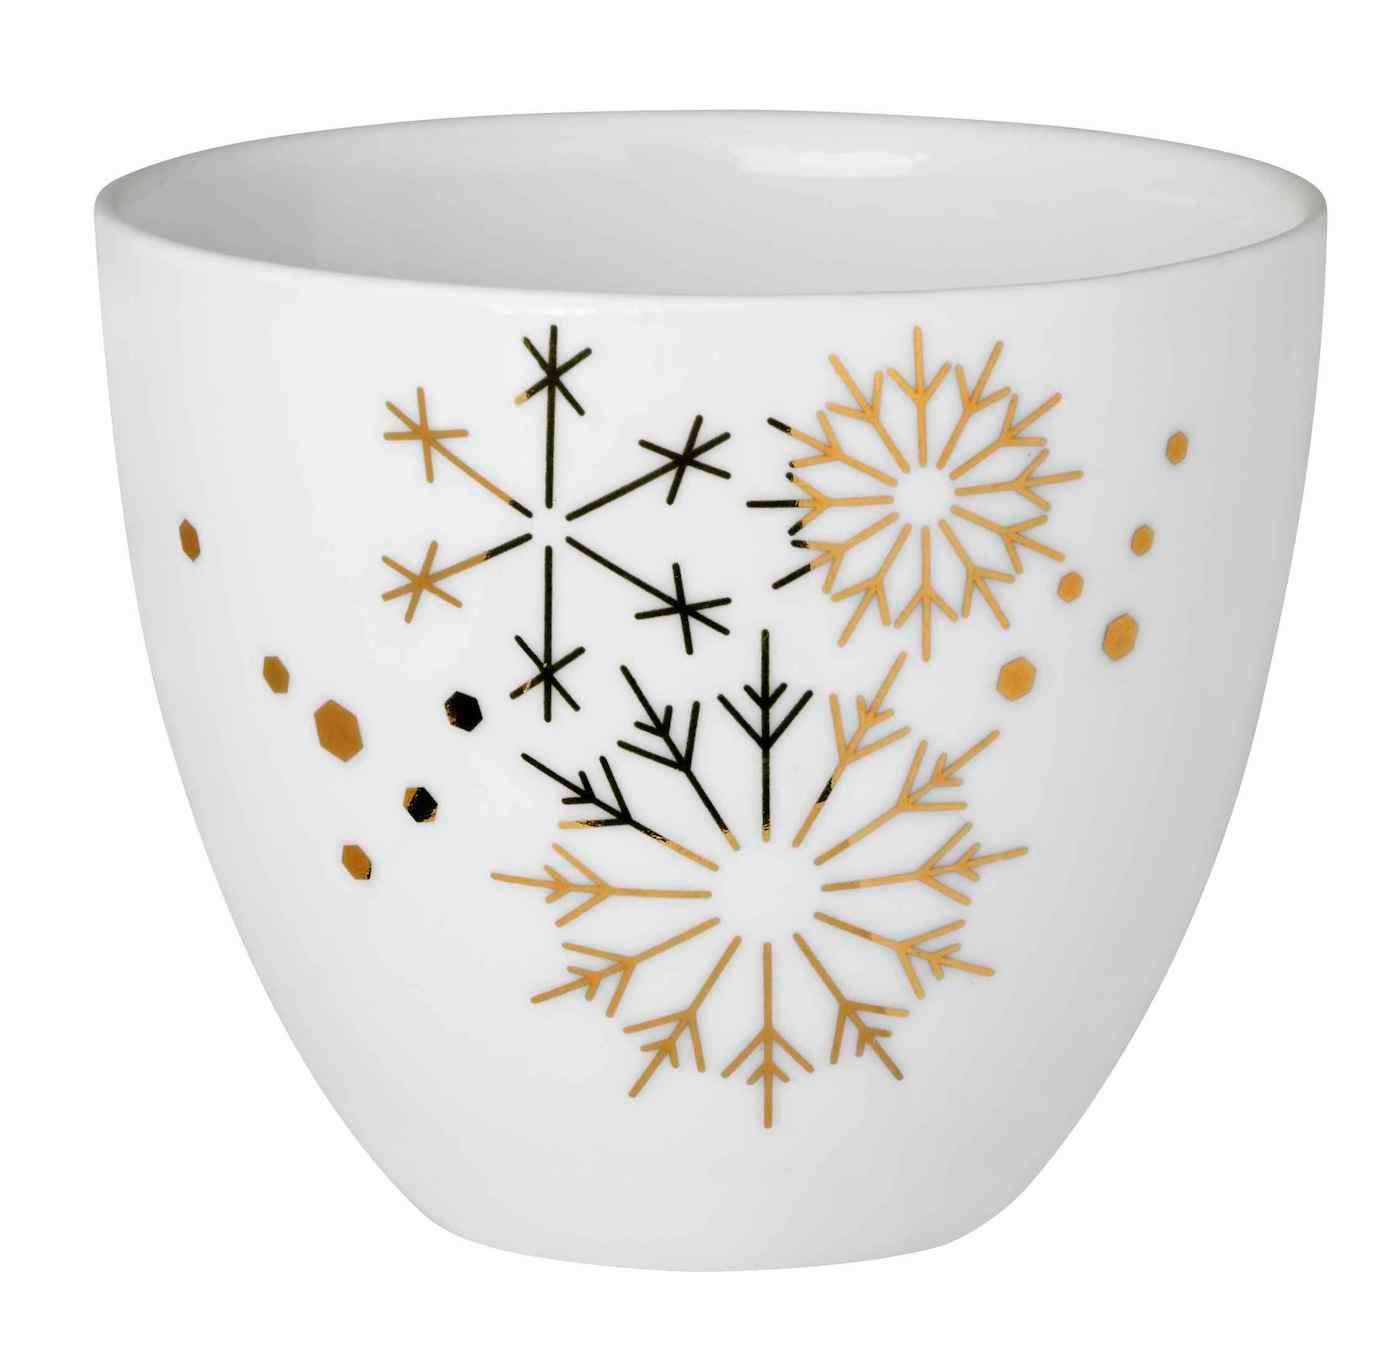 Räder Design Teelichthalter Porzellanlicht Schneeflocken Gold Porzellan weiß gold H6,5cm